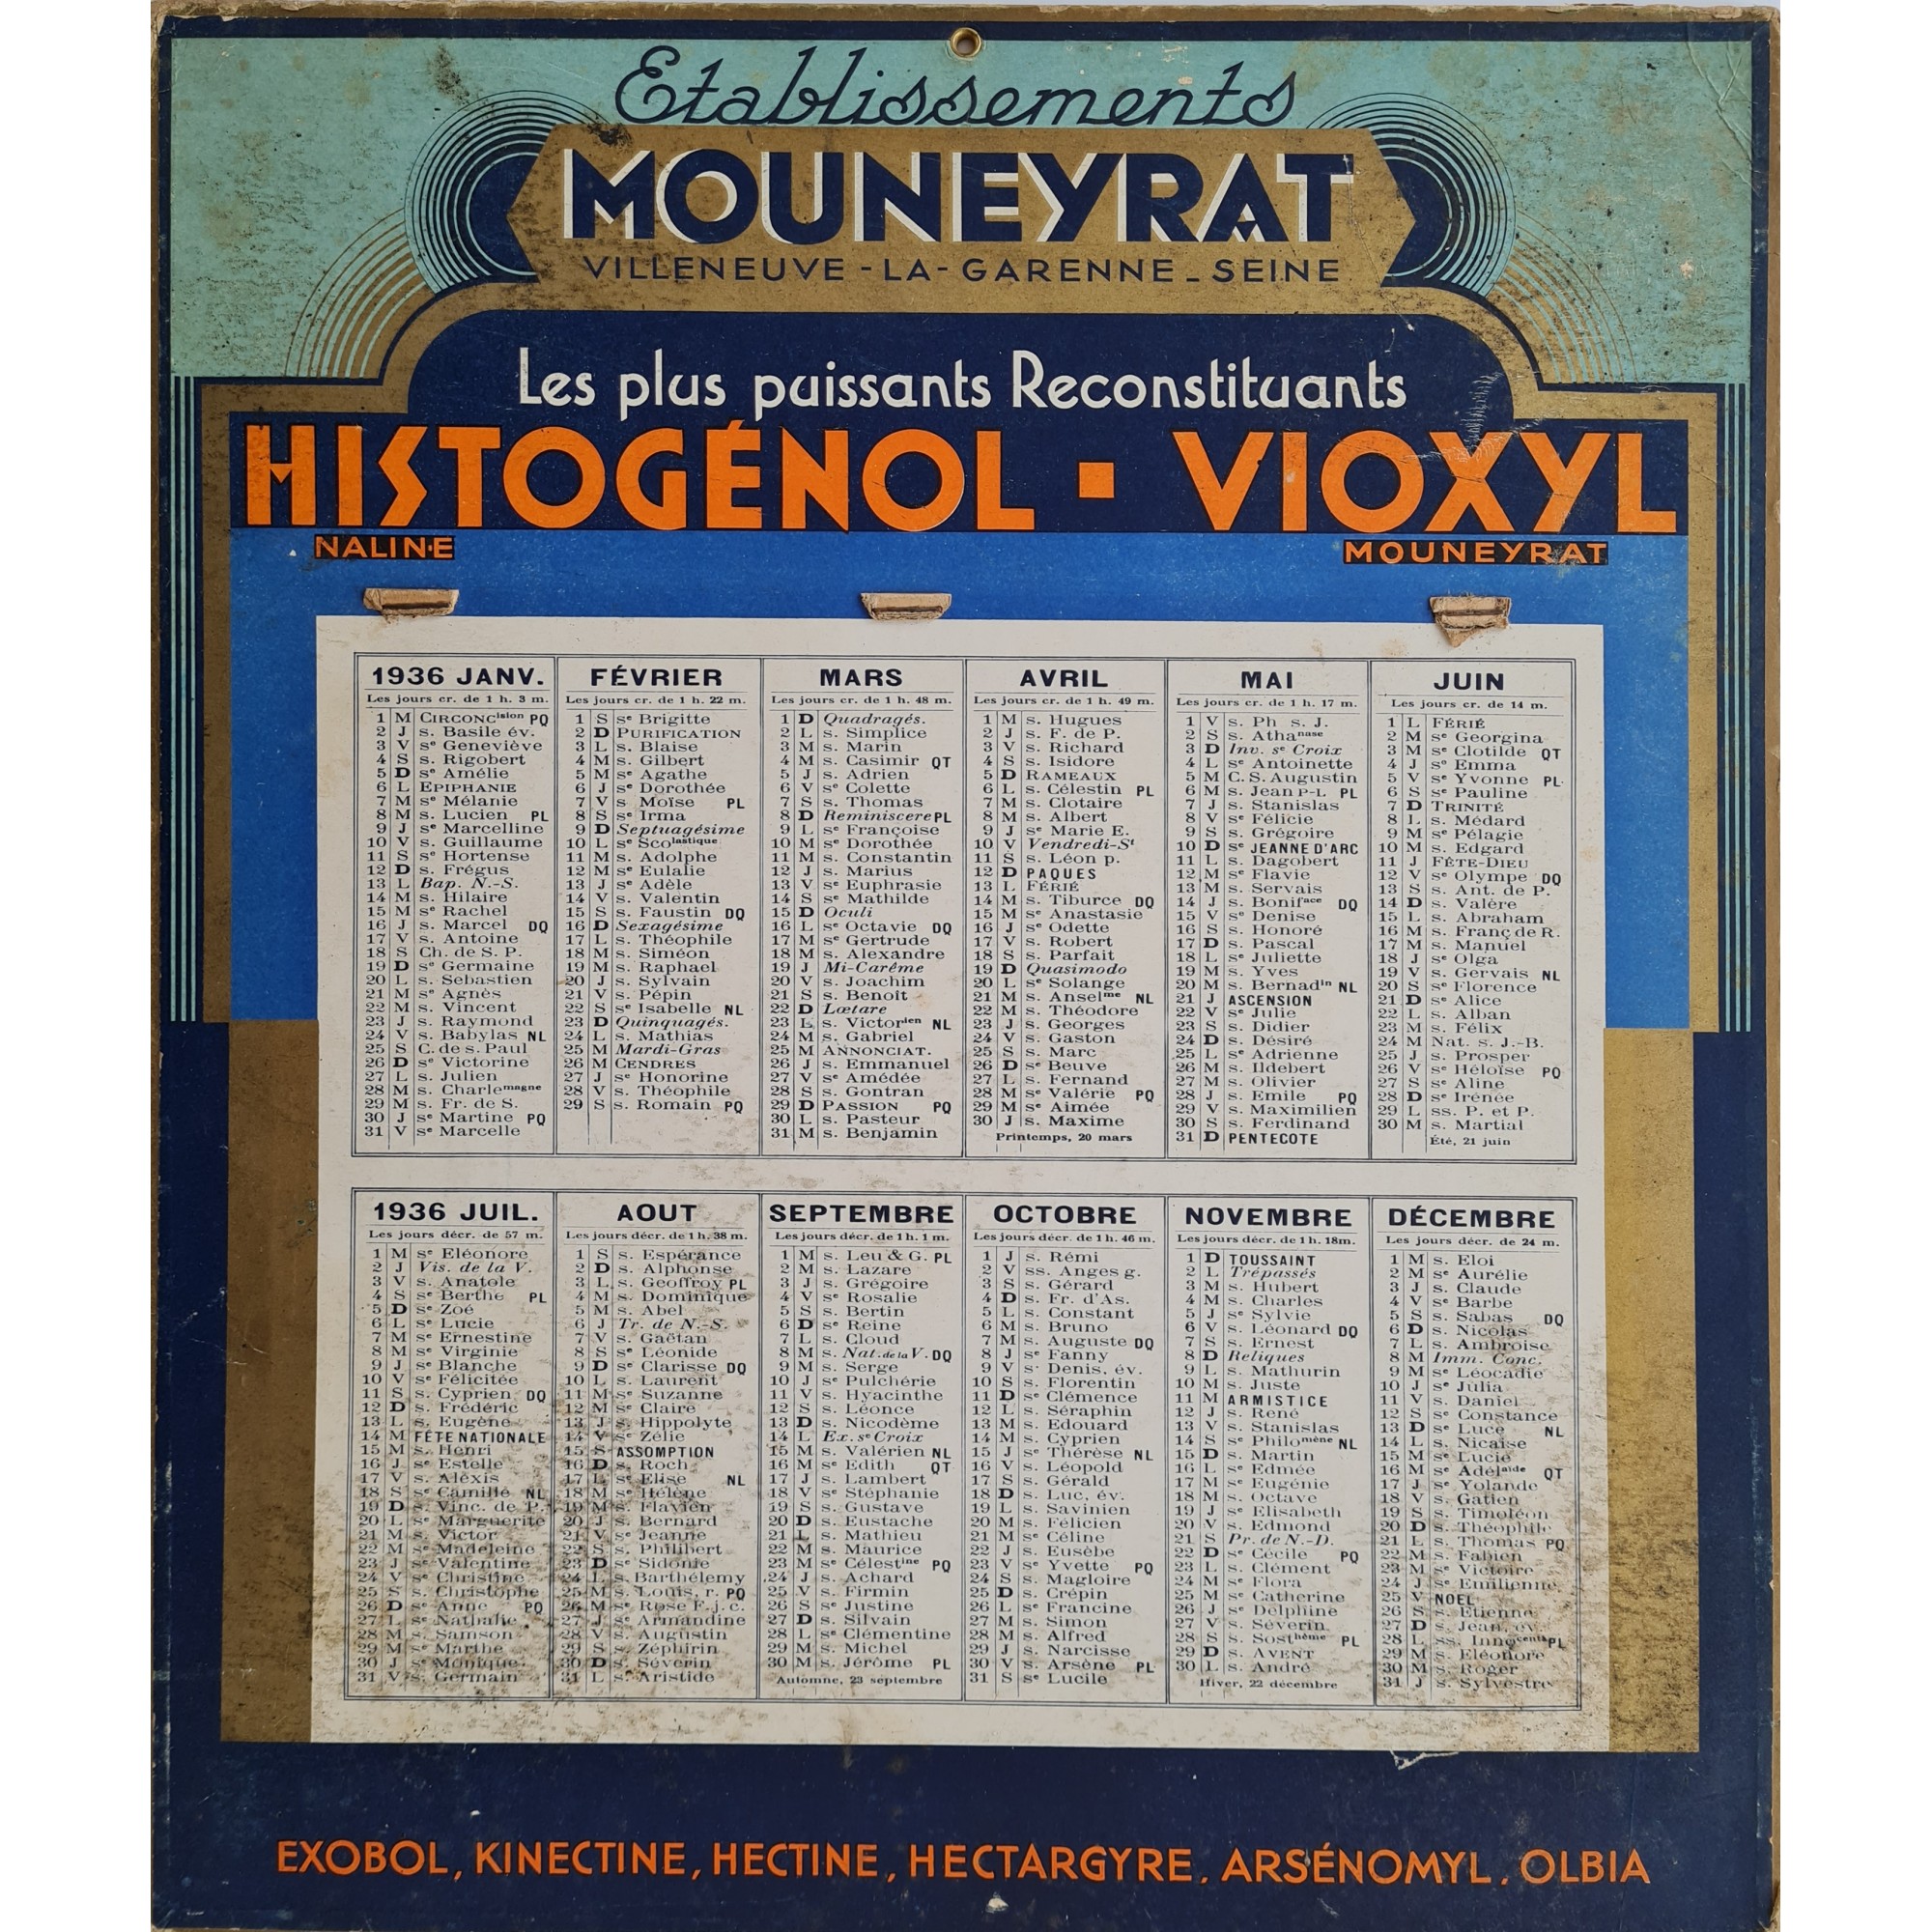 1936 - Etablissements Mouneyrat - Villeneuve la Garenne Seine